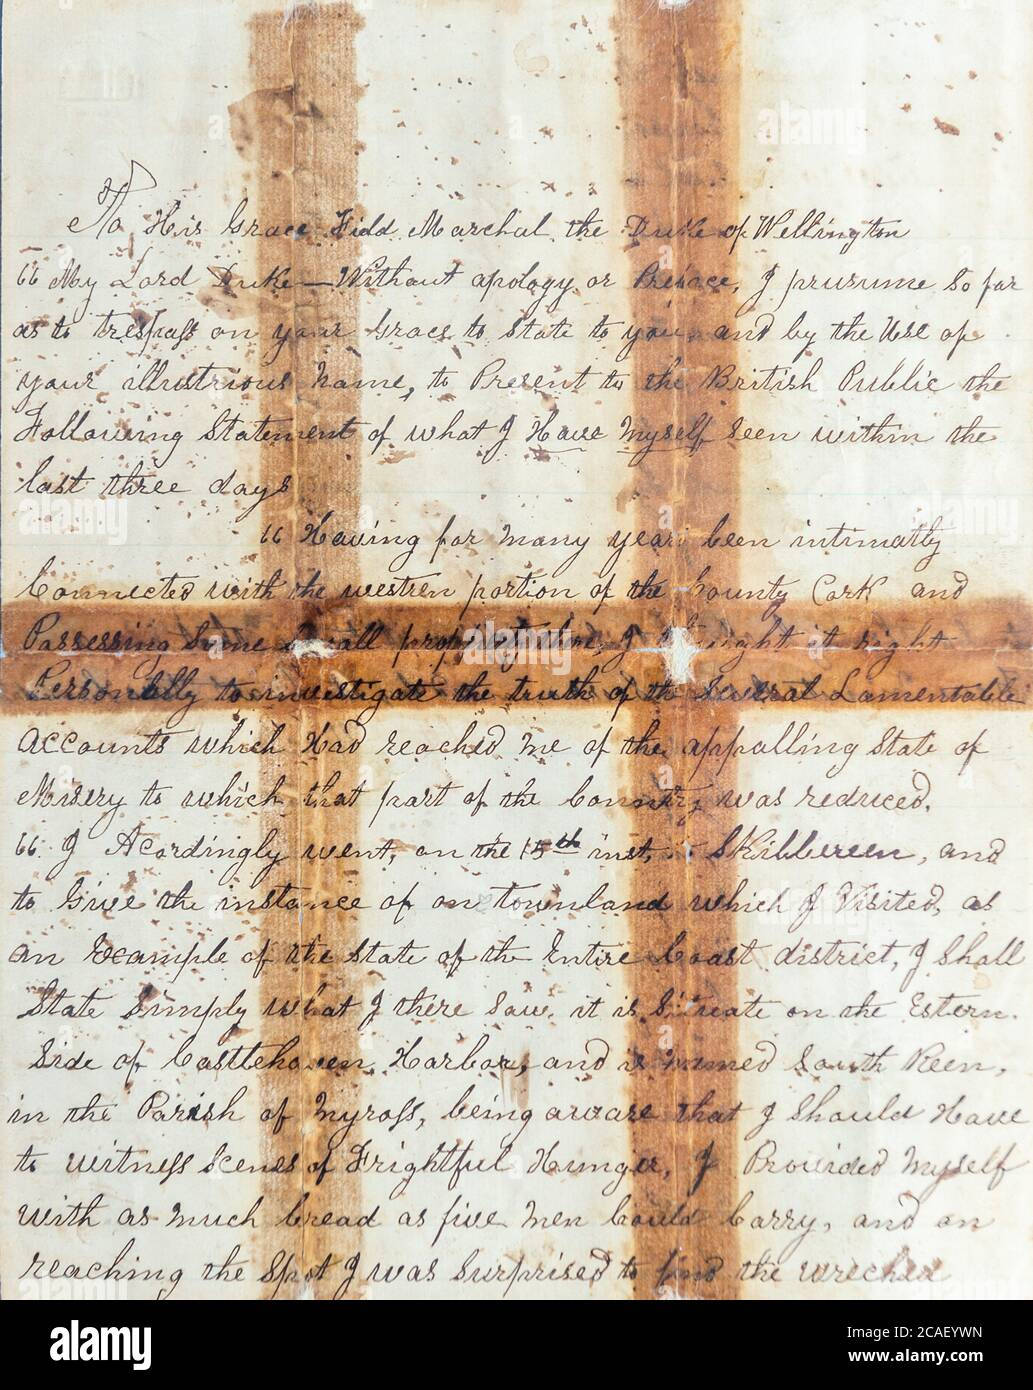 Lettera sulla carestia di Skibbereen che evidenzia il numero di morti per carestia scritte nel 1846 da un magistrato di Cork al duca di Wellington. Foto Stock